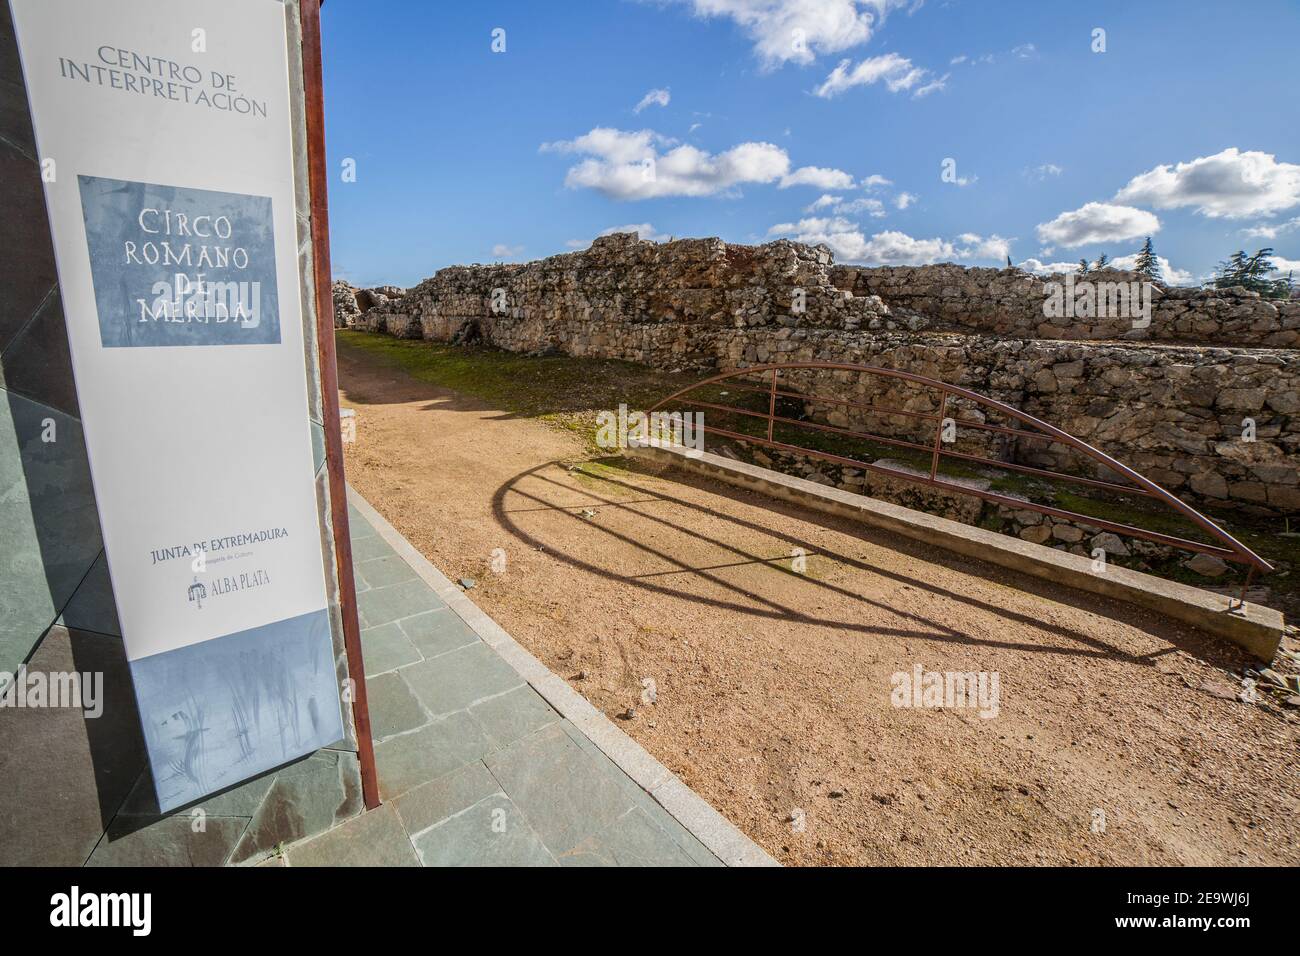 Merida, Spanien - 12th. Dez 2020: Imperial City Circus von Emerita Augusta, Merida, Spanien. Eines der größten des römischen Reiches Stockfoto